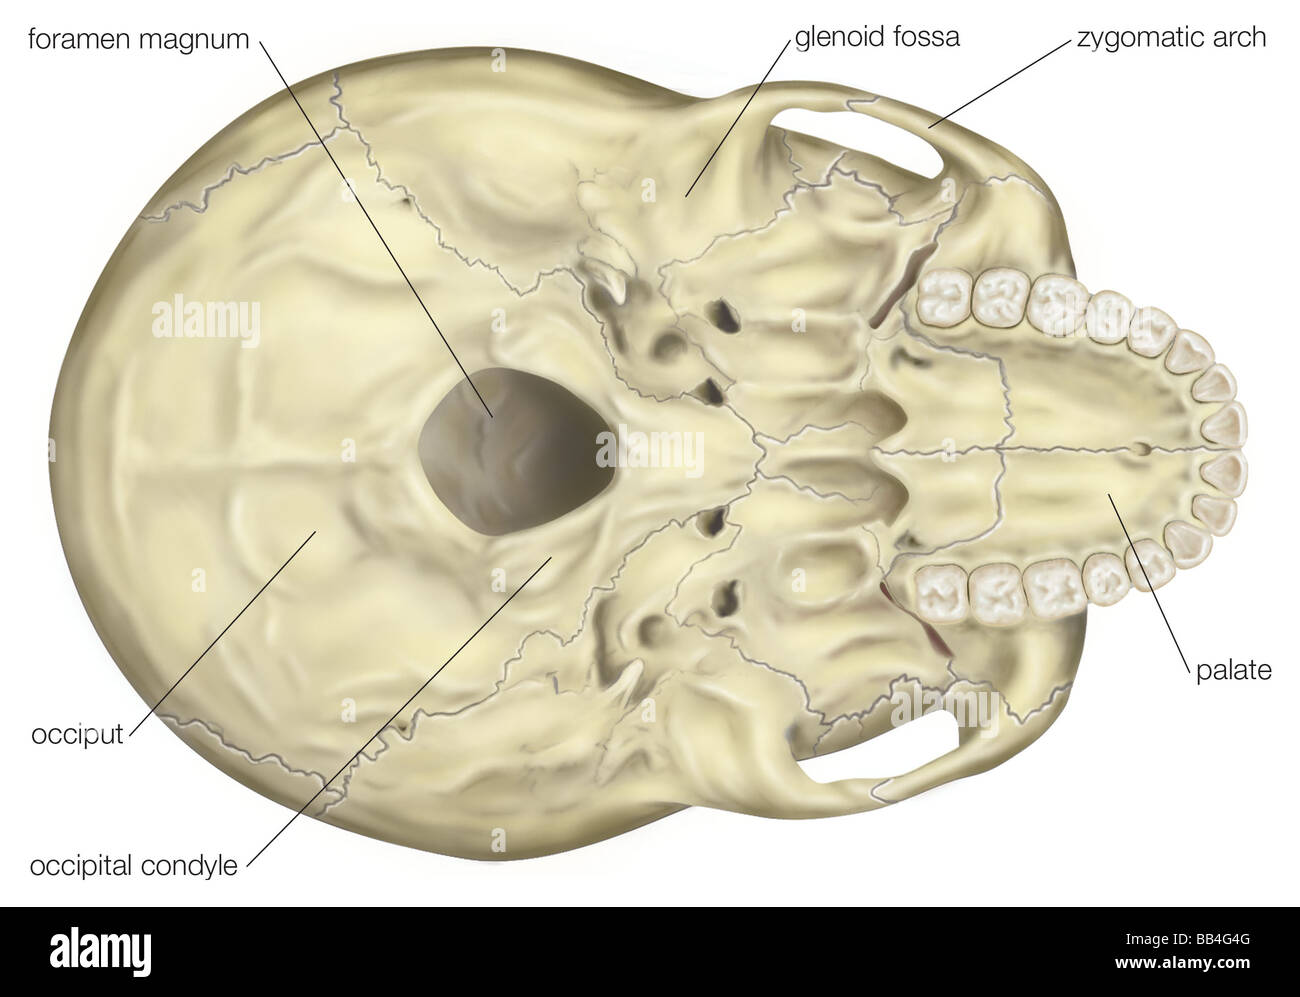 Vista de la base del cráneo humano, mostrando la ubicación céntrica del foramen magnum. Foto de stock